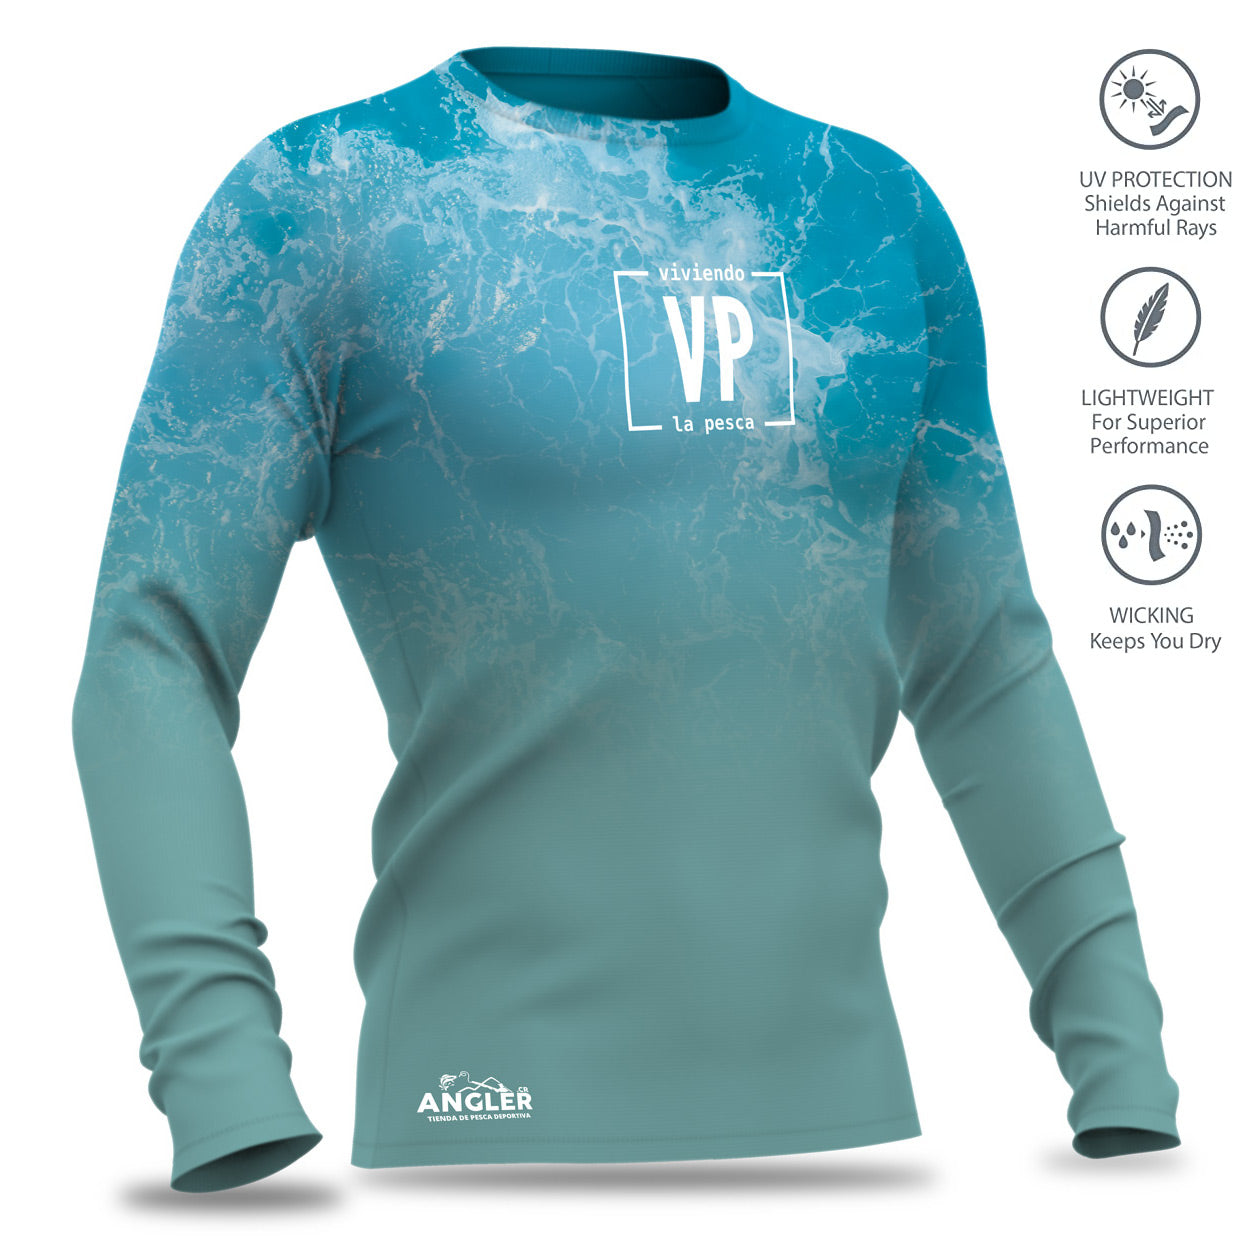 Camiseta Coastal Flagship con Protección UV, Secado Rápido, Respirable